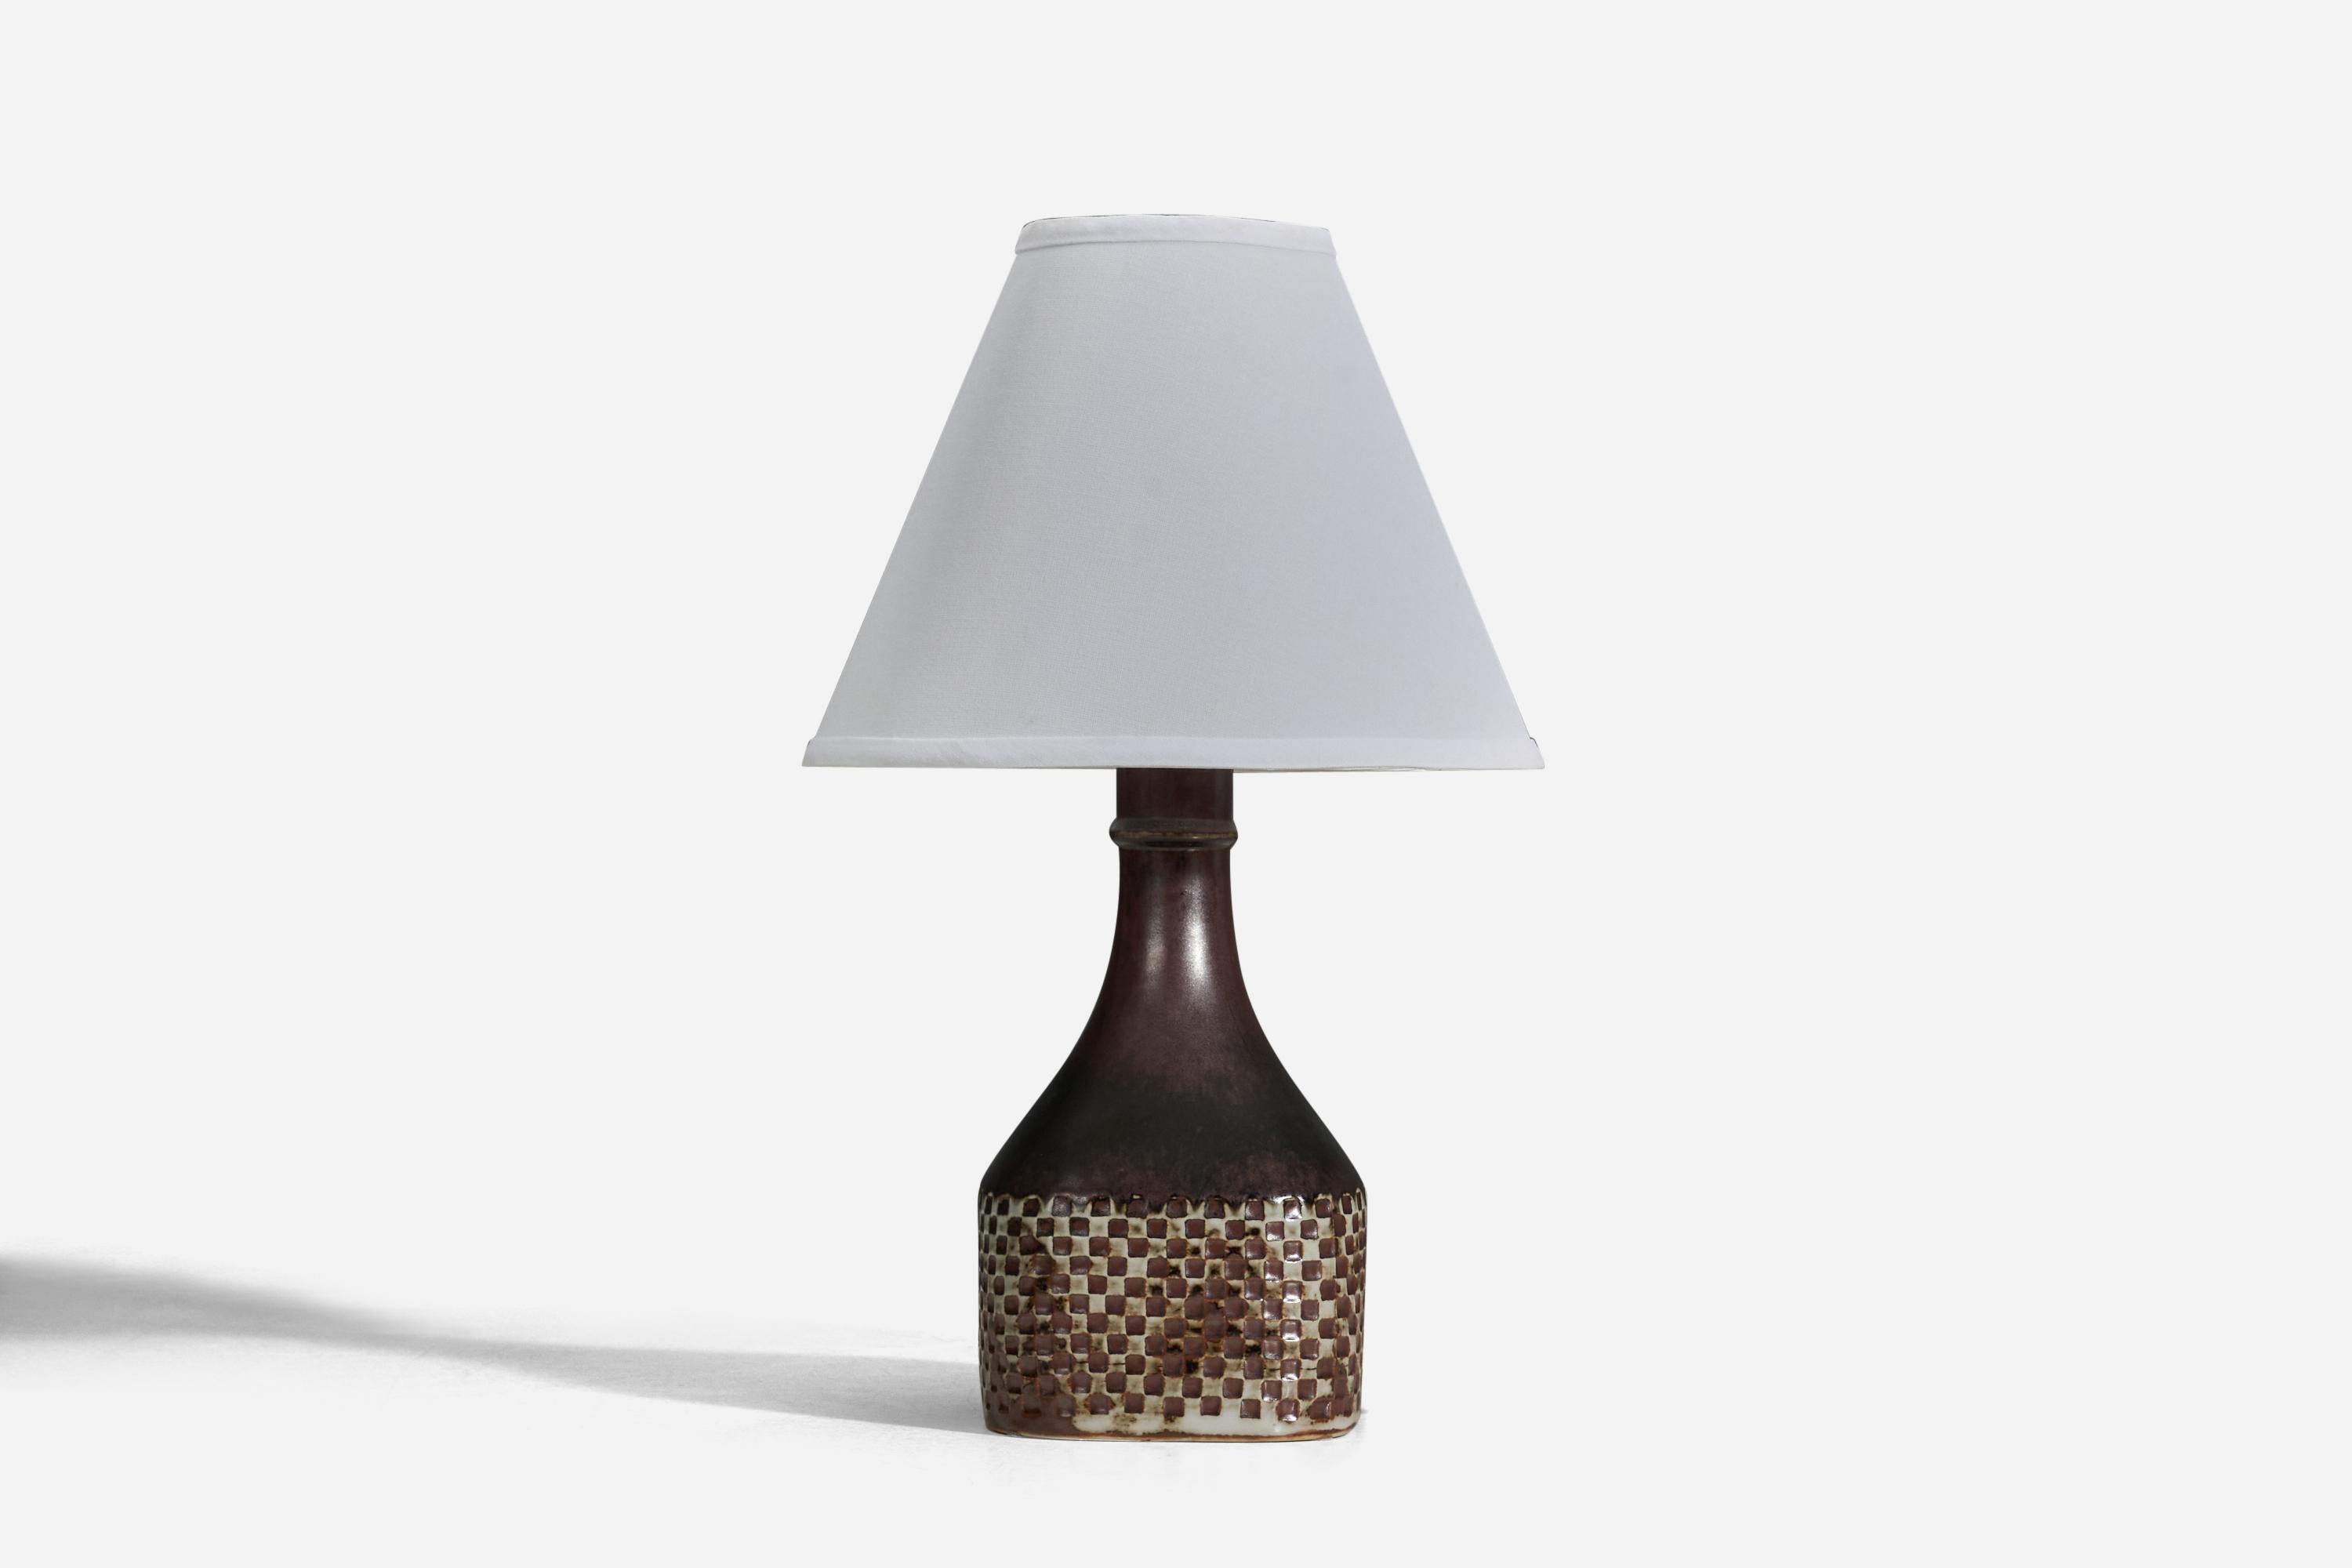 Lampe de table en grès émaillé brun, conçue par Stig Lindberg et produite par Gustavsberg, Suède, années 1950.

Vendu sans abat-jour
Dimensions de la lampe (pouces) : 12 x 5.33 x 5.3 (Hauteur x Largeur x Profondeur)
Dimensions de l'abat-jour